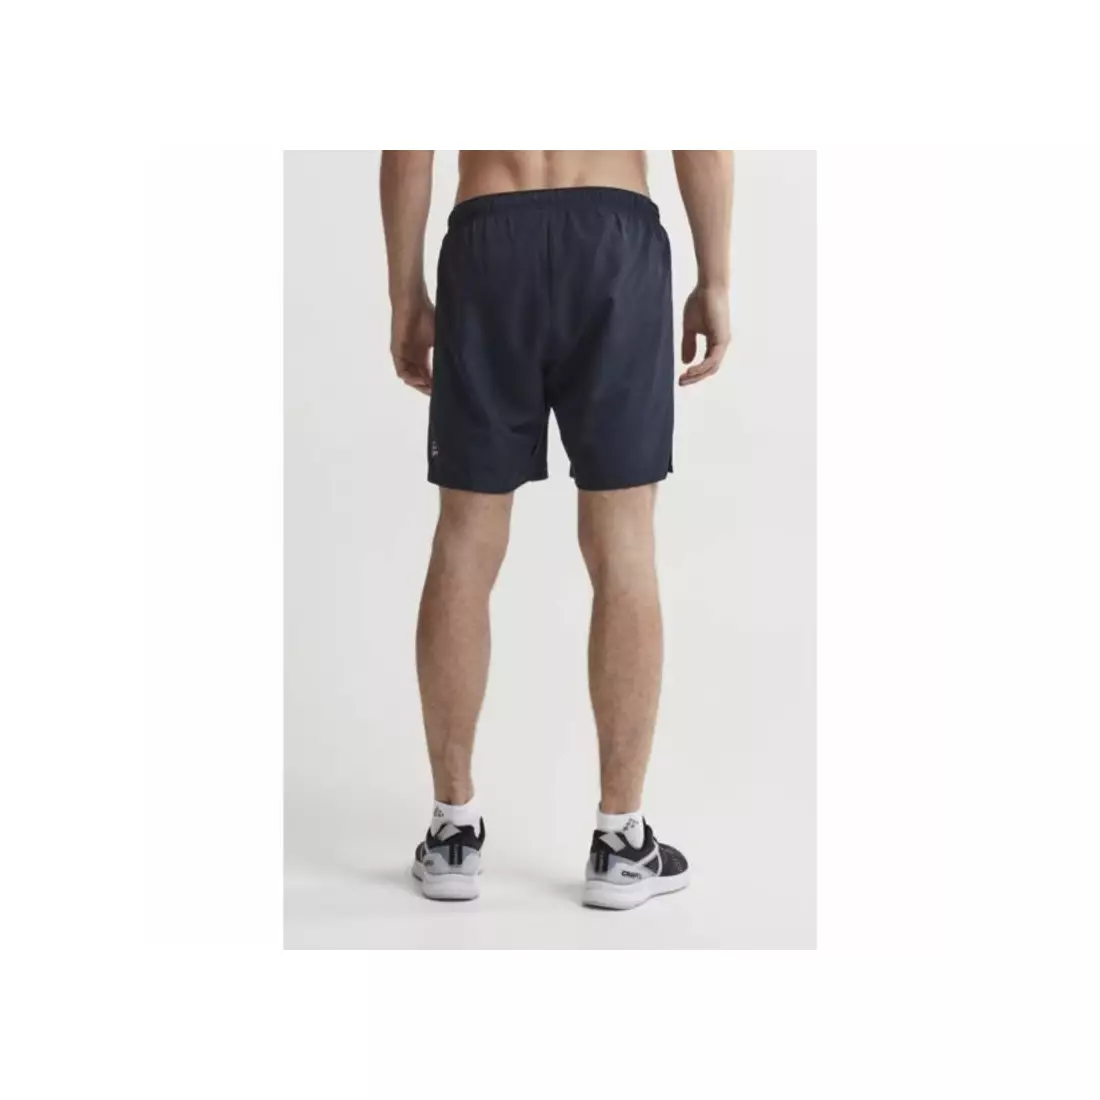 CRAFT EAZE WOVEN pantaloni scurți de antrenament pentru bărbați 1907052-396000